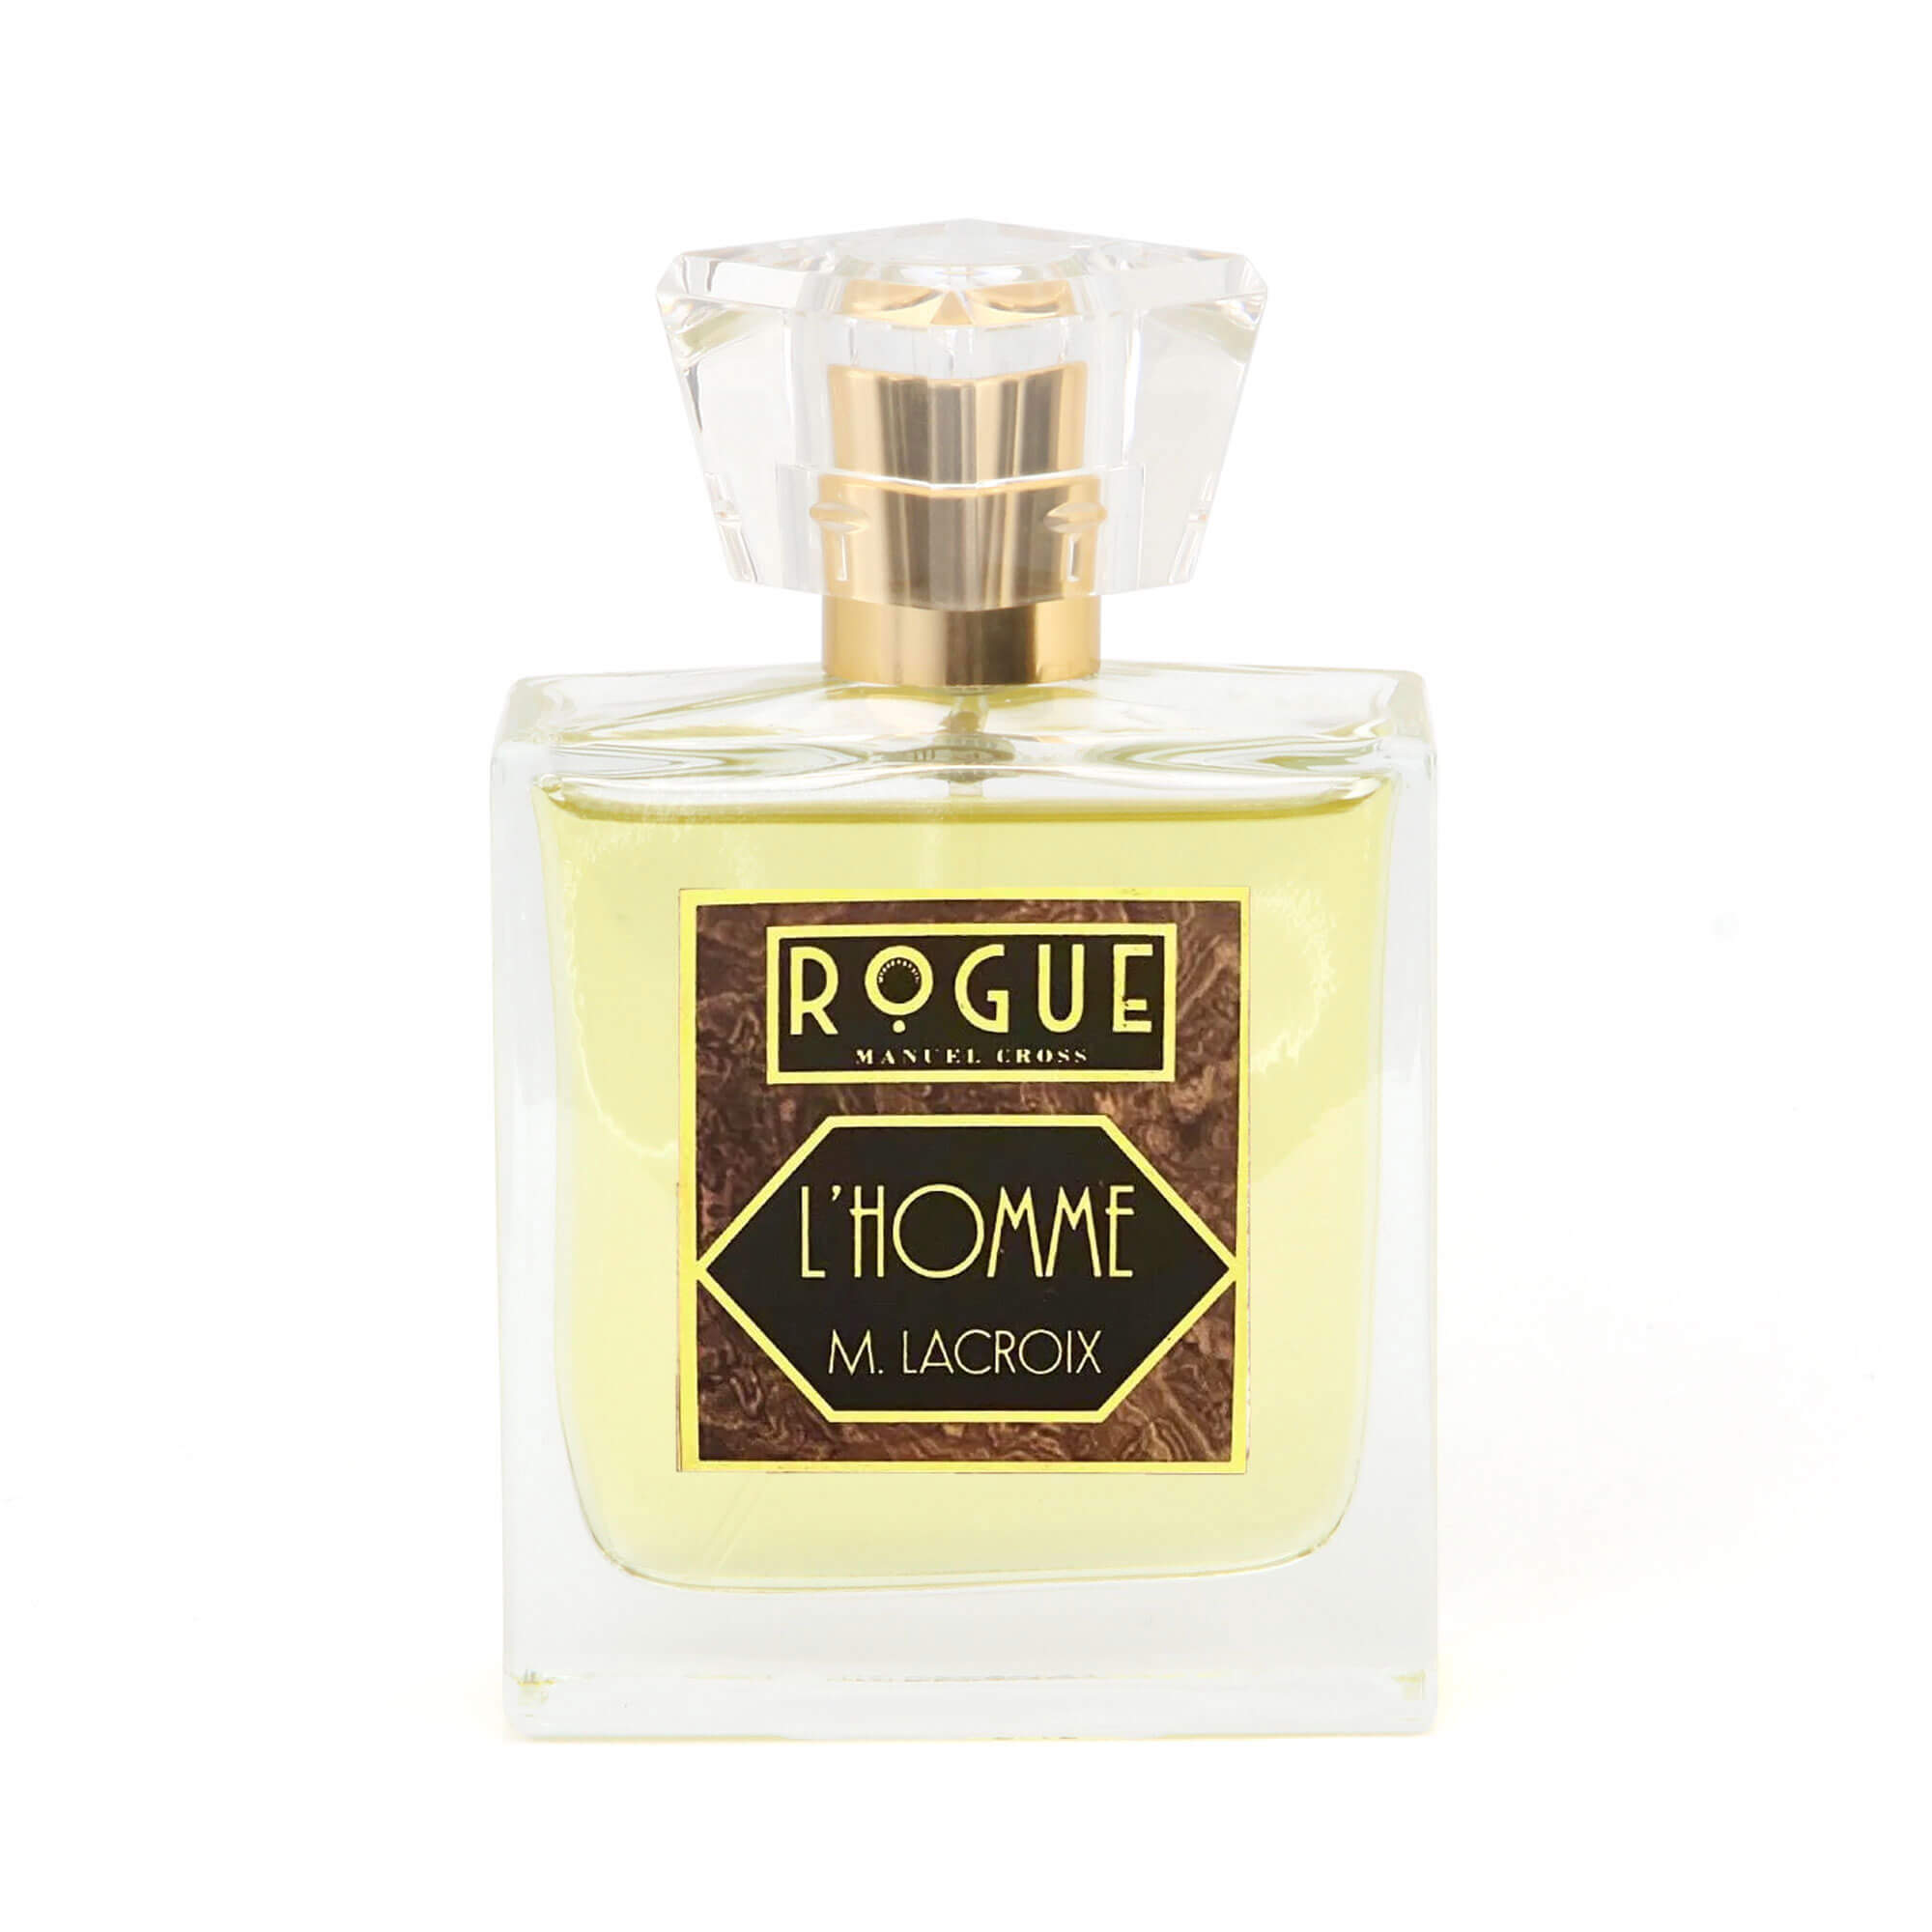 Rogue Perfumery L’Homme M. Lacroix Eau De Toilette